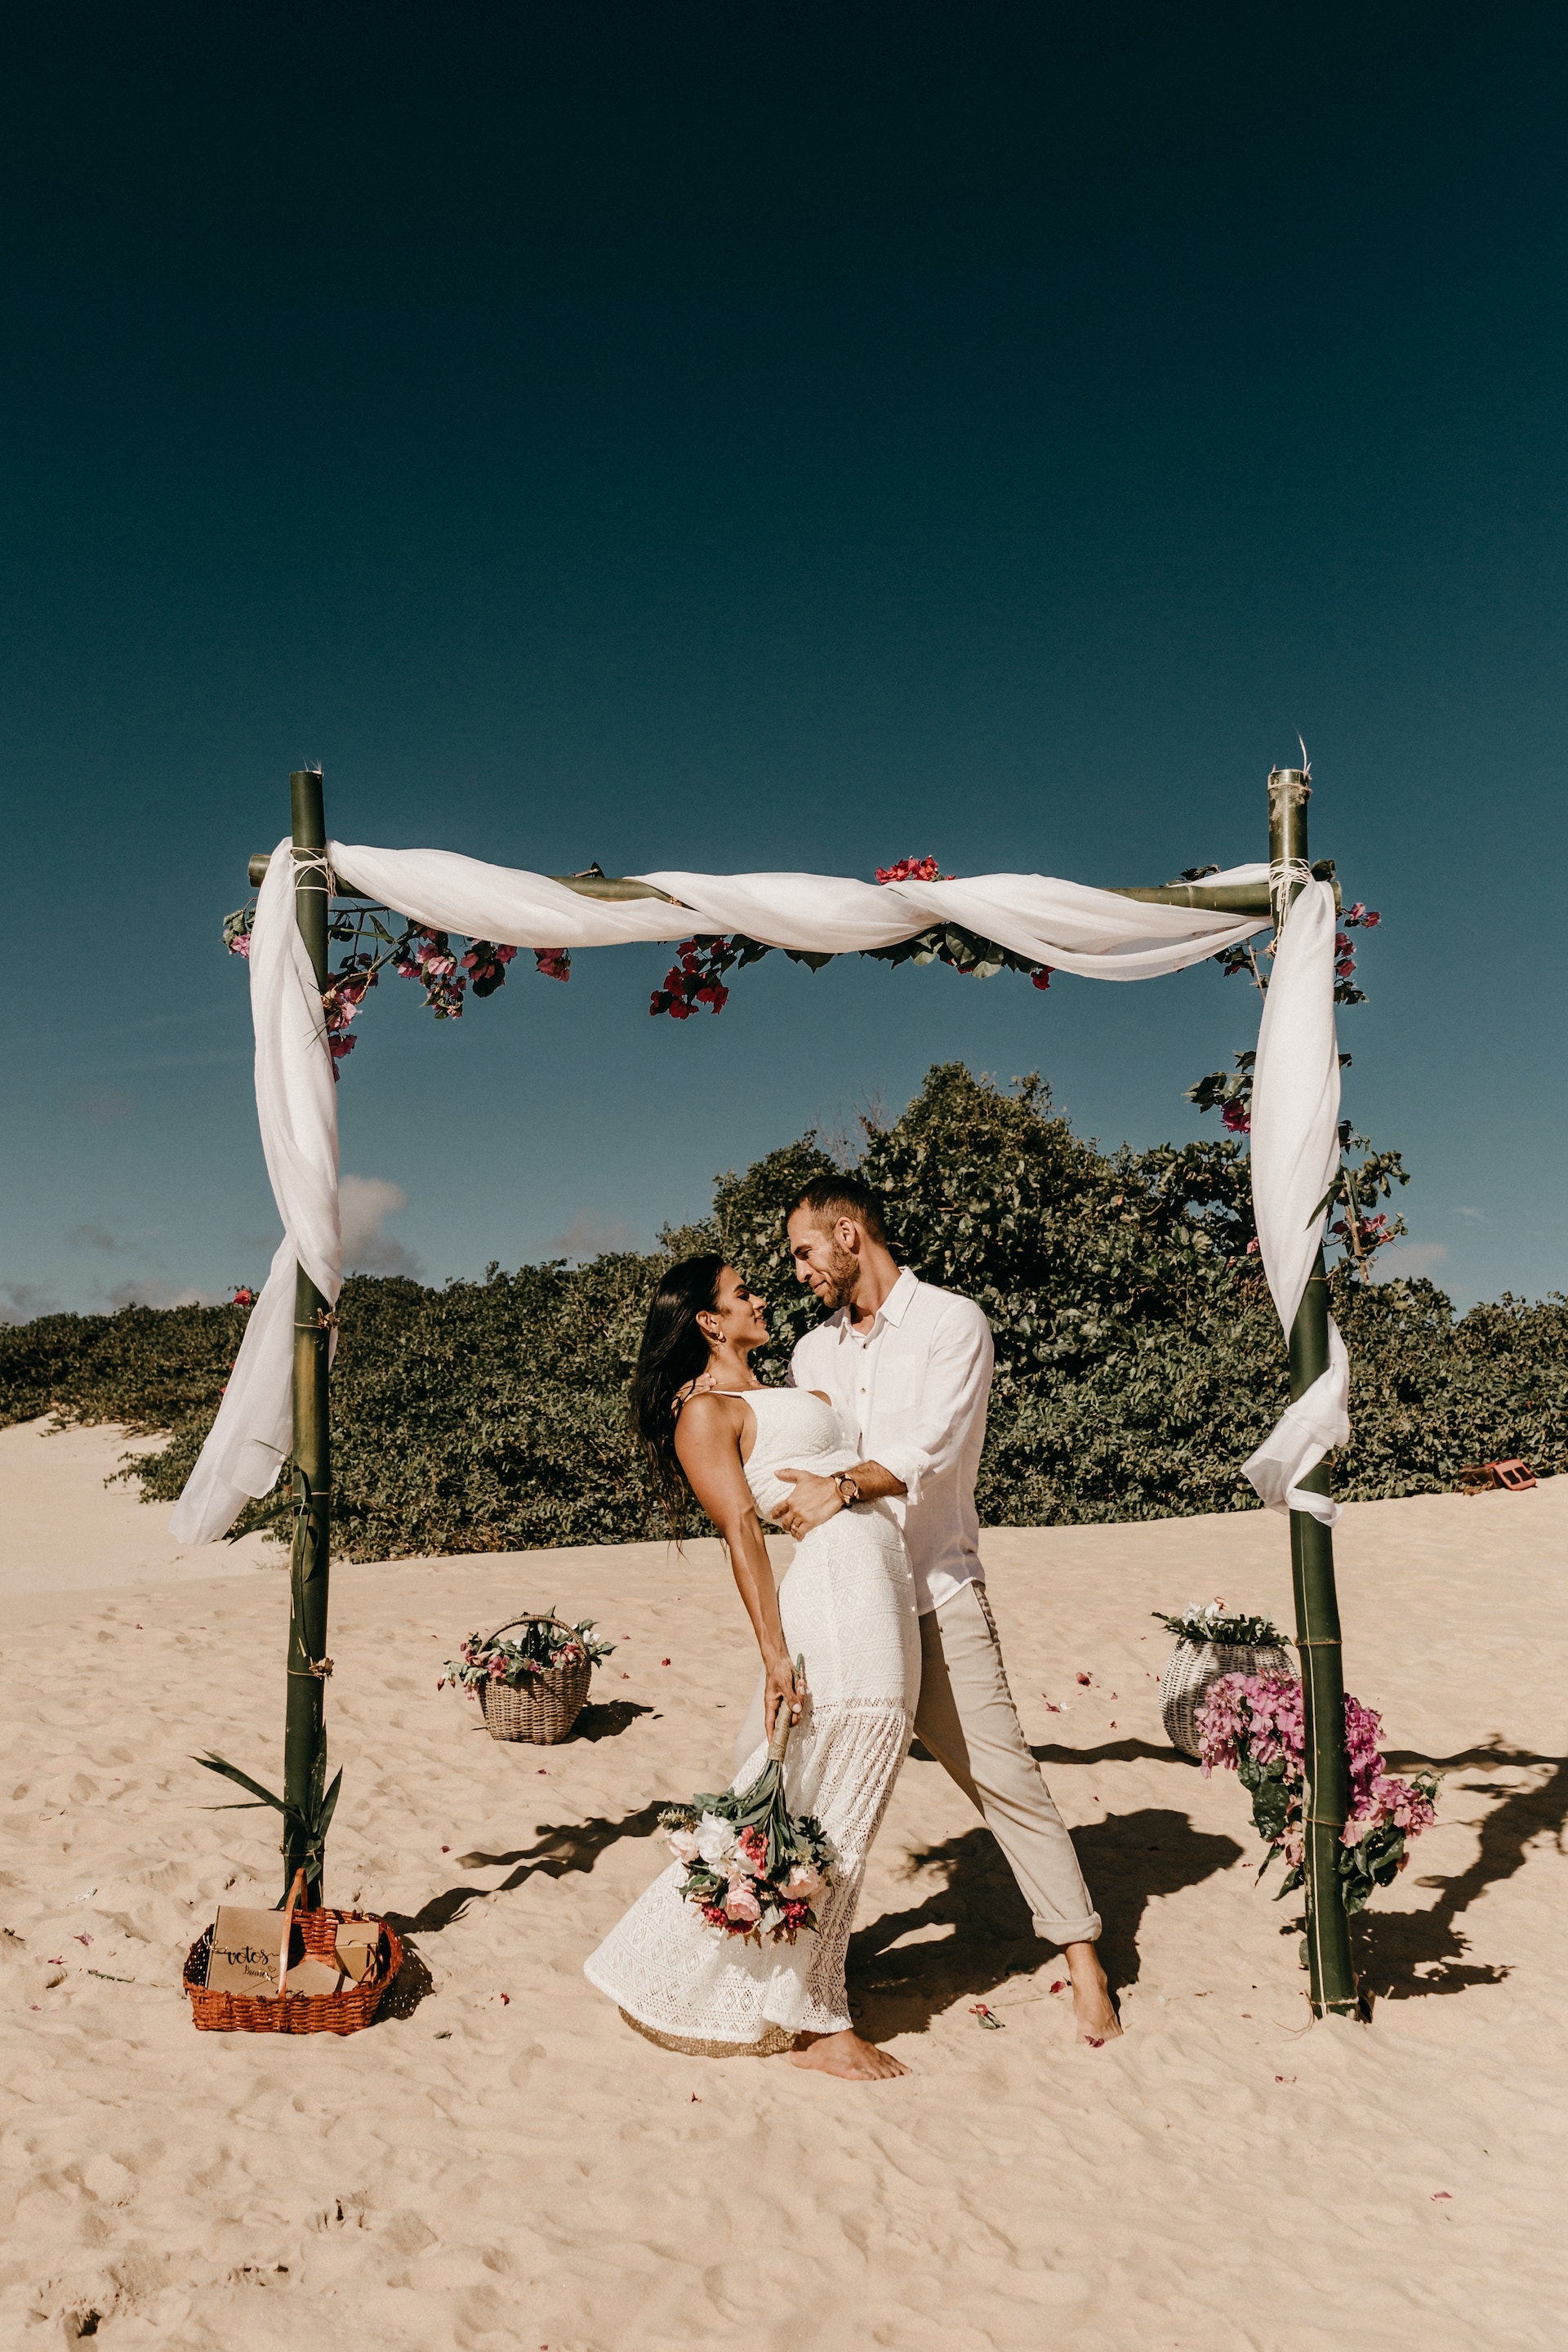 Eine Braut und ein Bräutigam am Strand | Quelle: Pexels